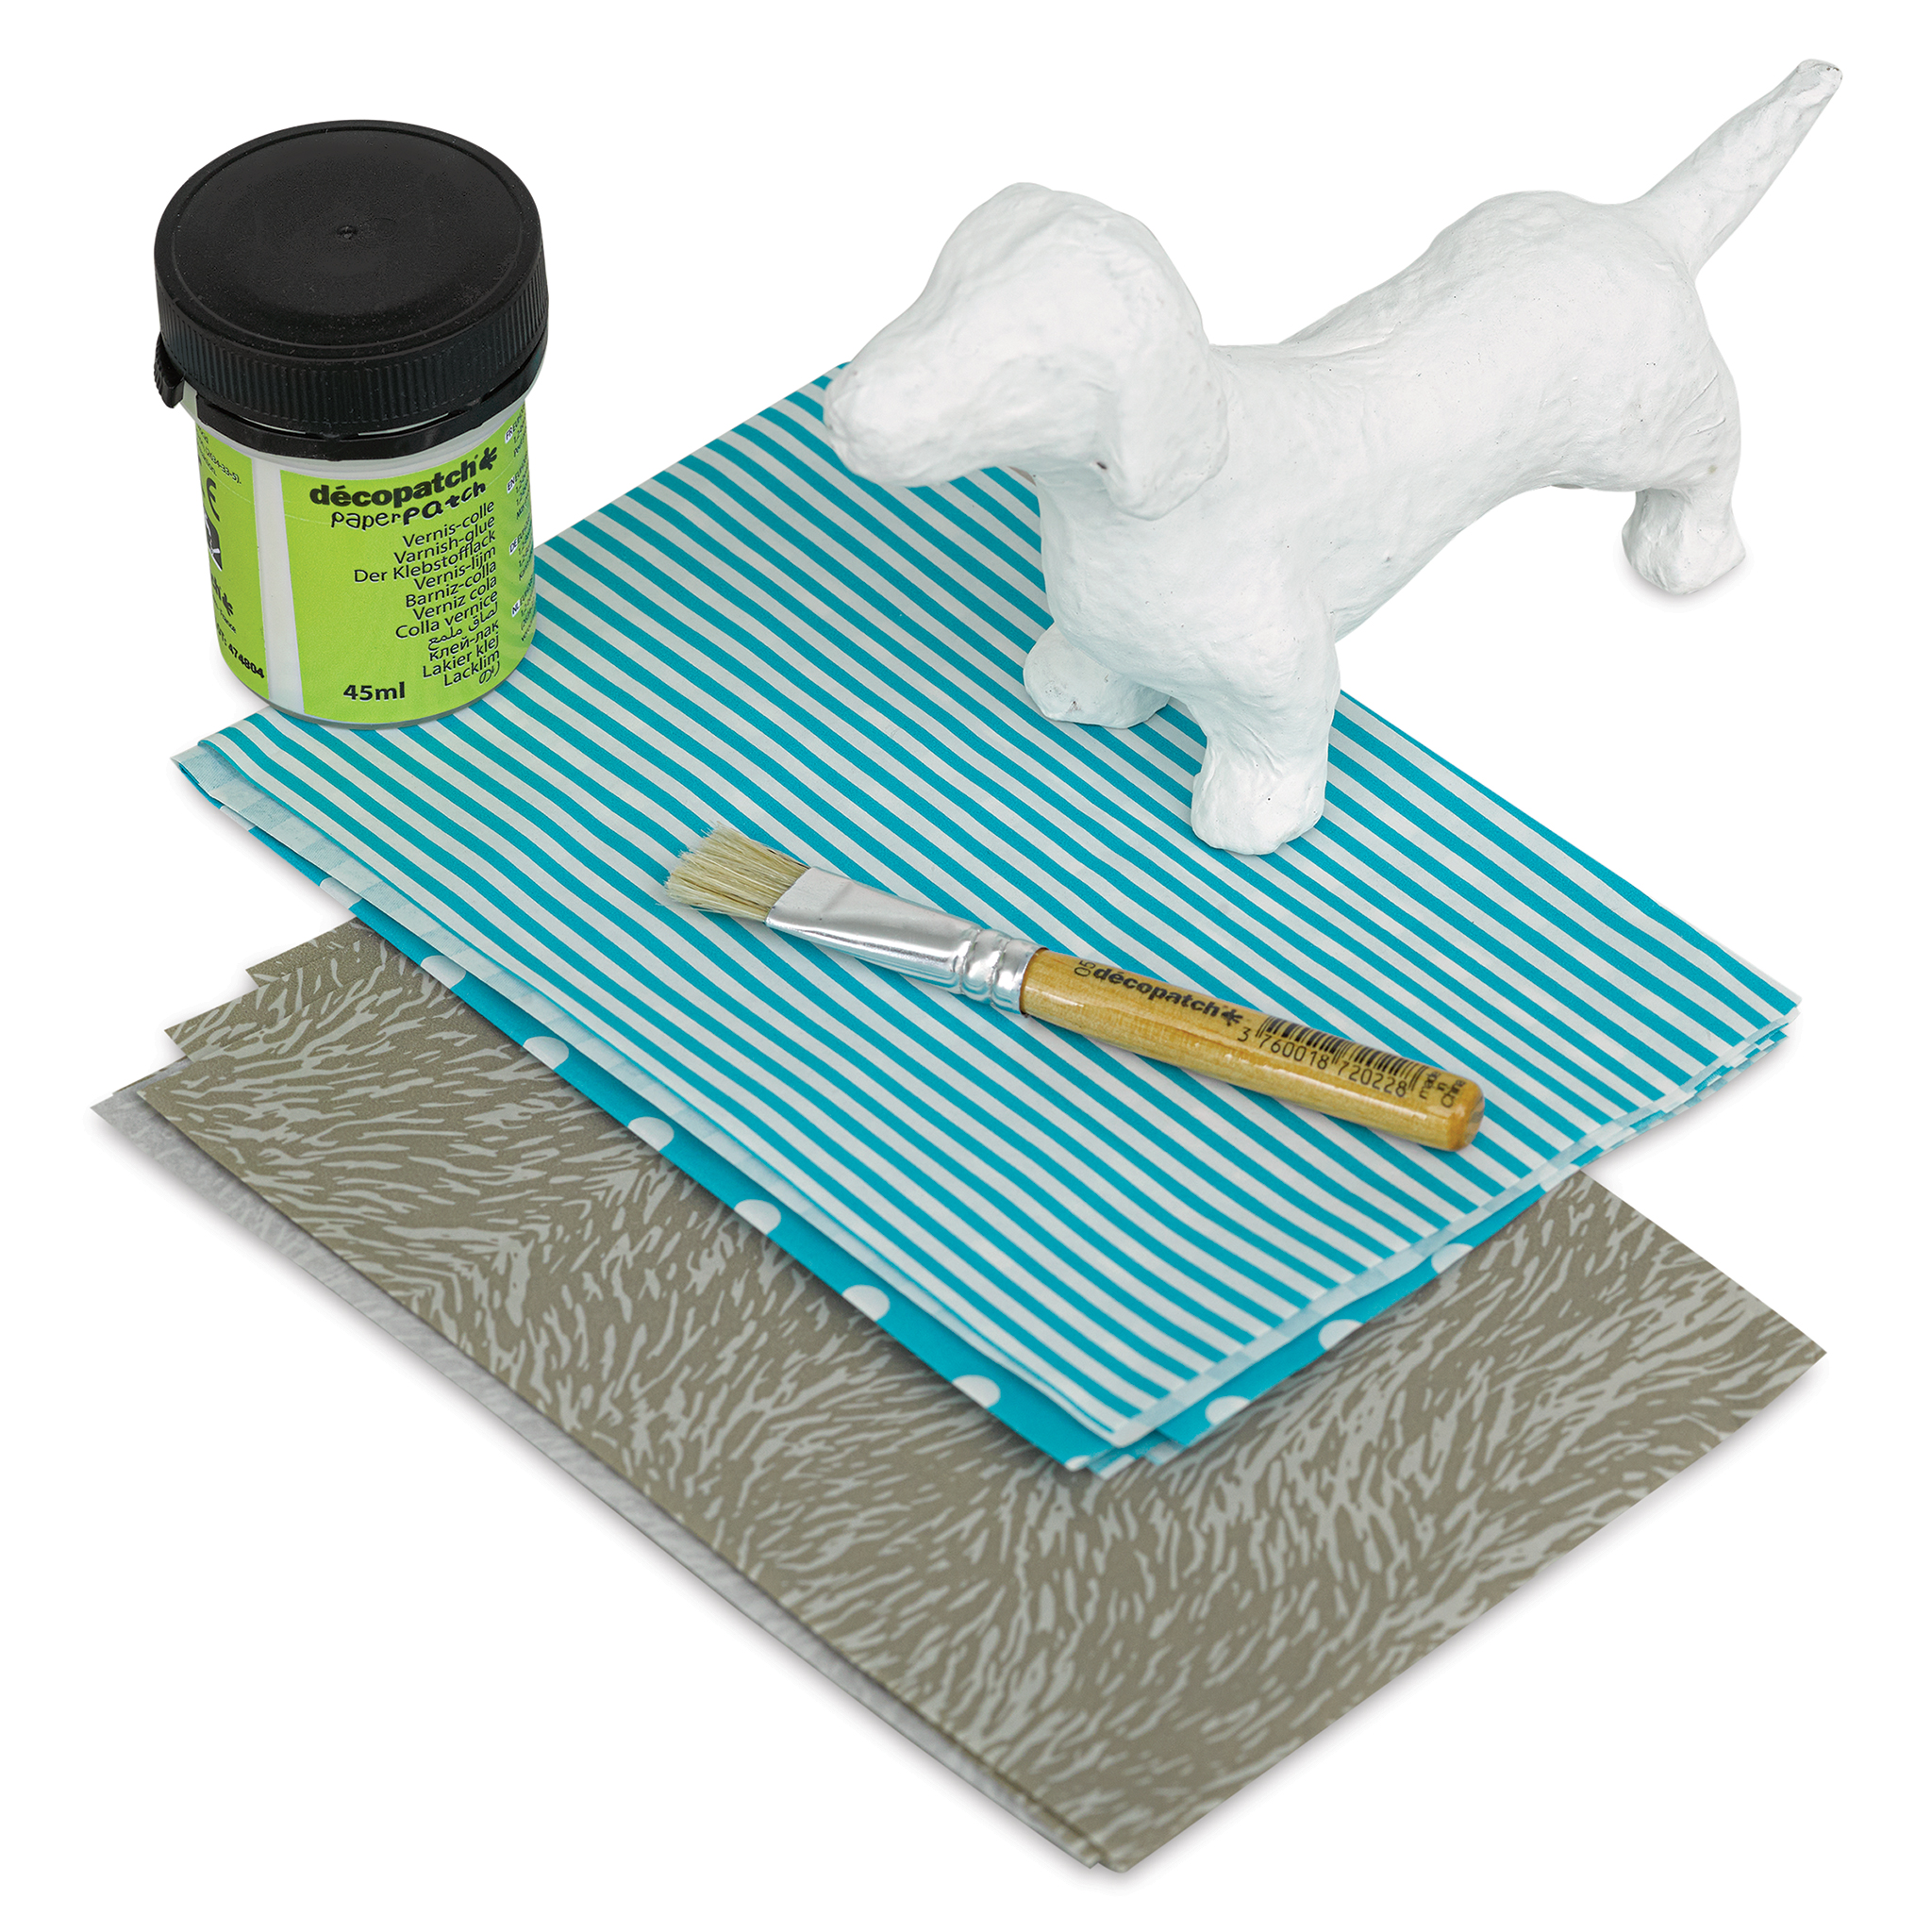 DecoPatch Paper Mache Elephant Kit, BLICK Art Materials